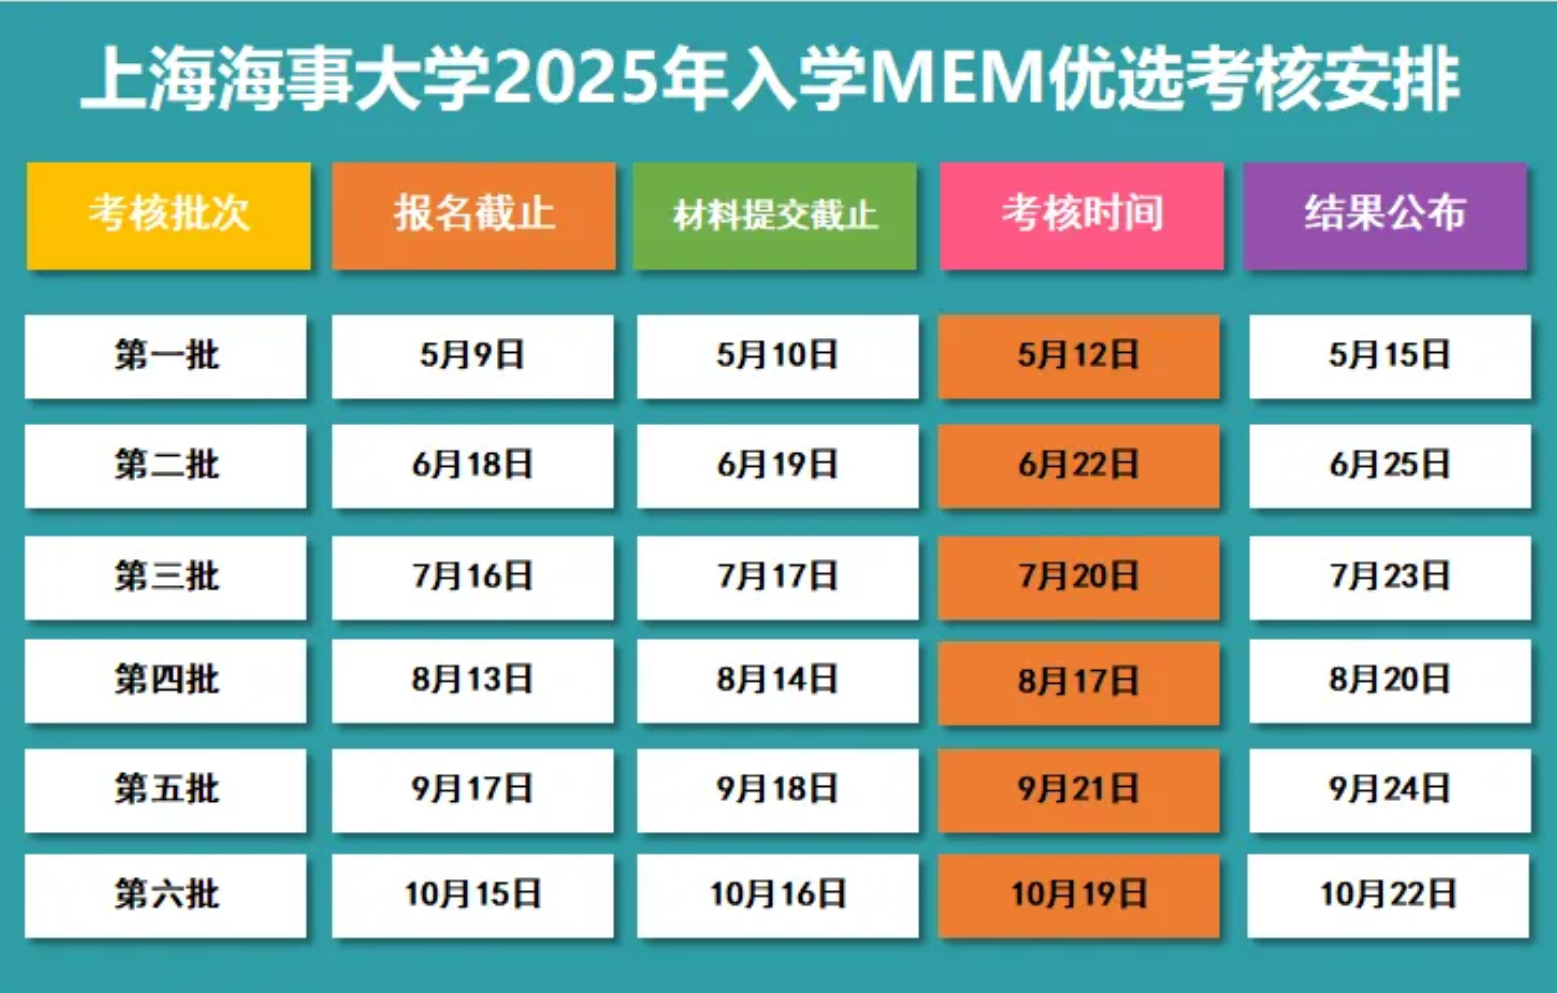 上海海事大学2025年MEM优选考核通知（第三批报名开启）